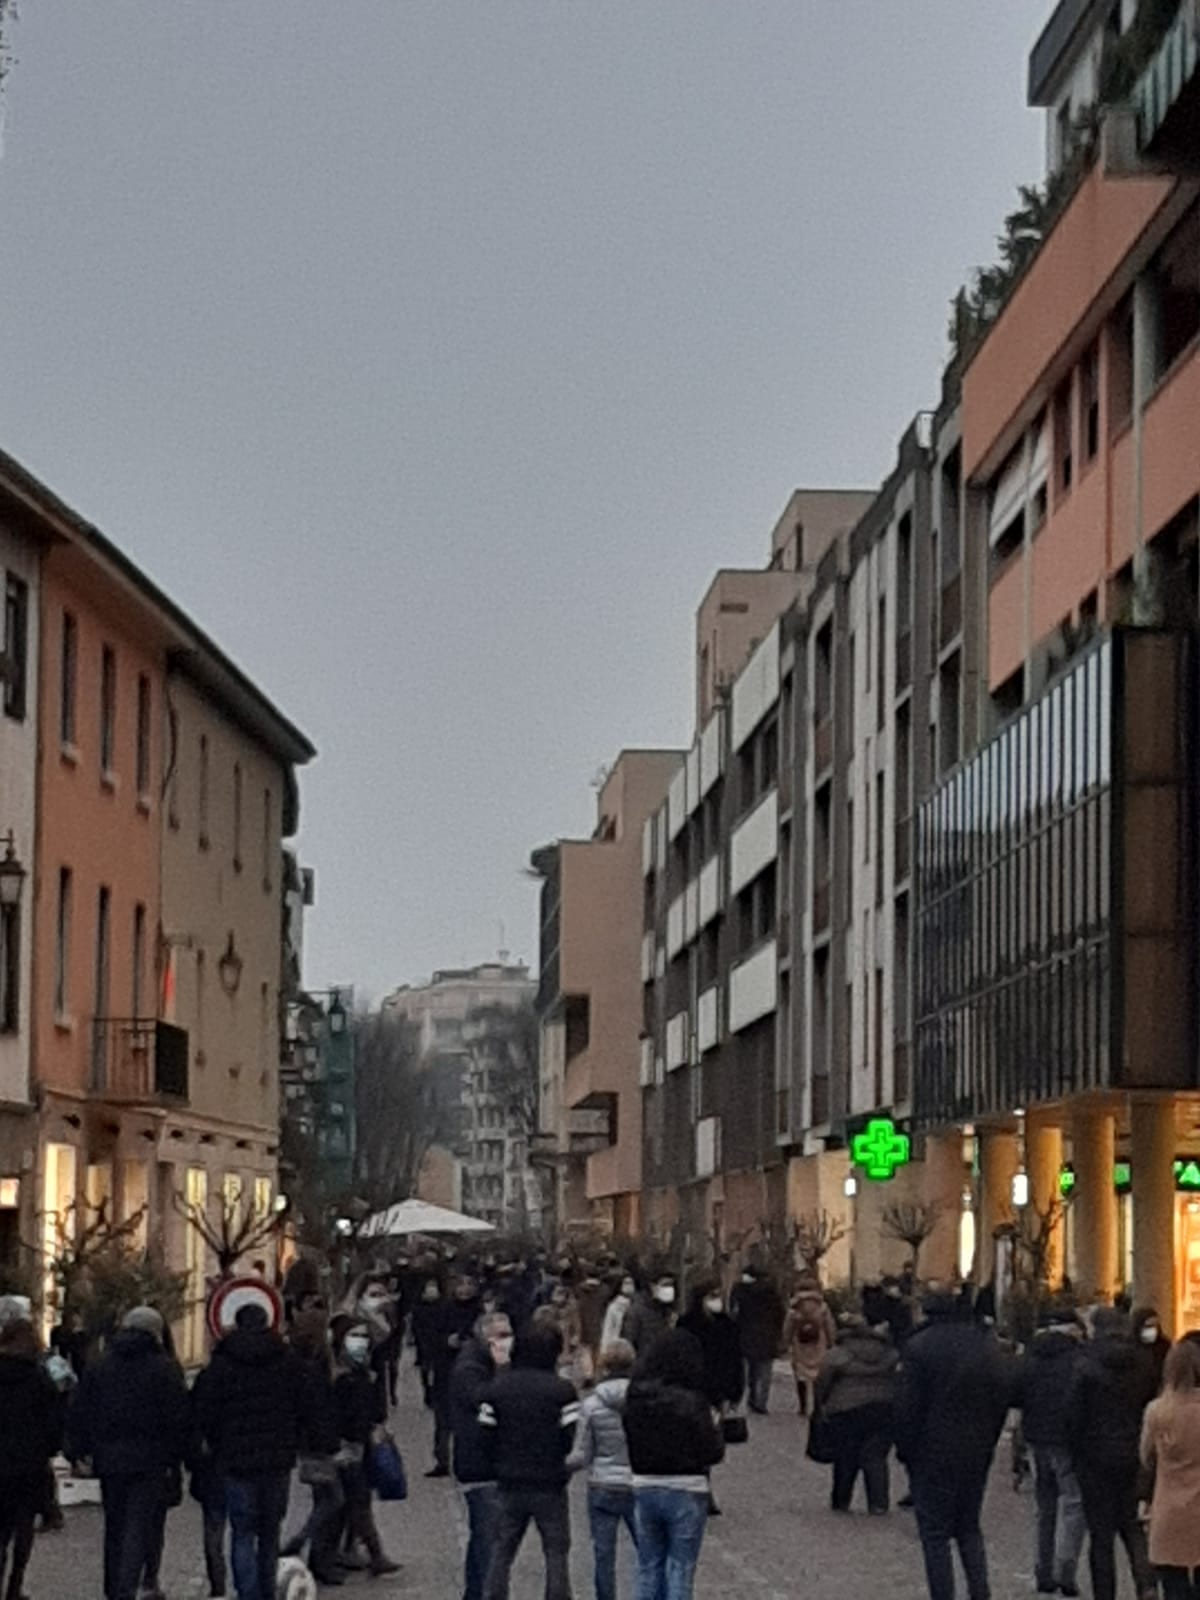 Saronno, sabato in Zona gialla: corso Italia e centro pienissimi. E forse qualcuno si è scordato della pandemia